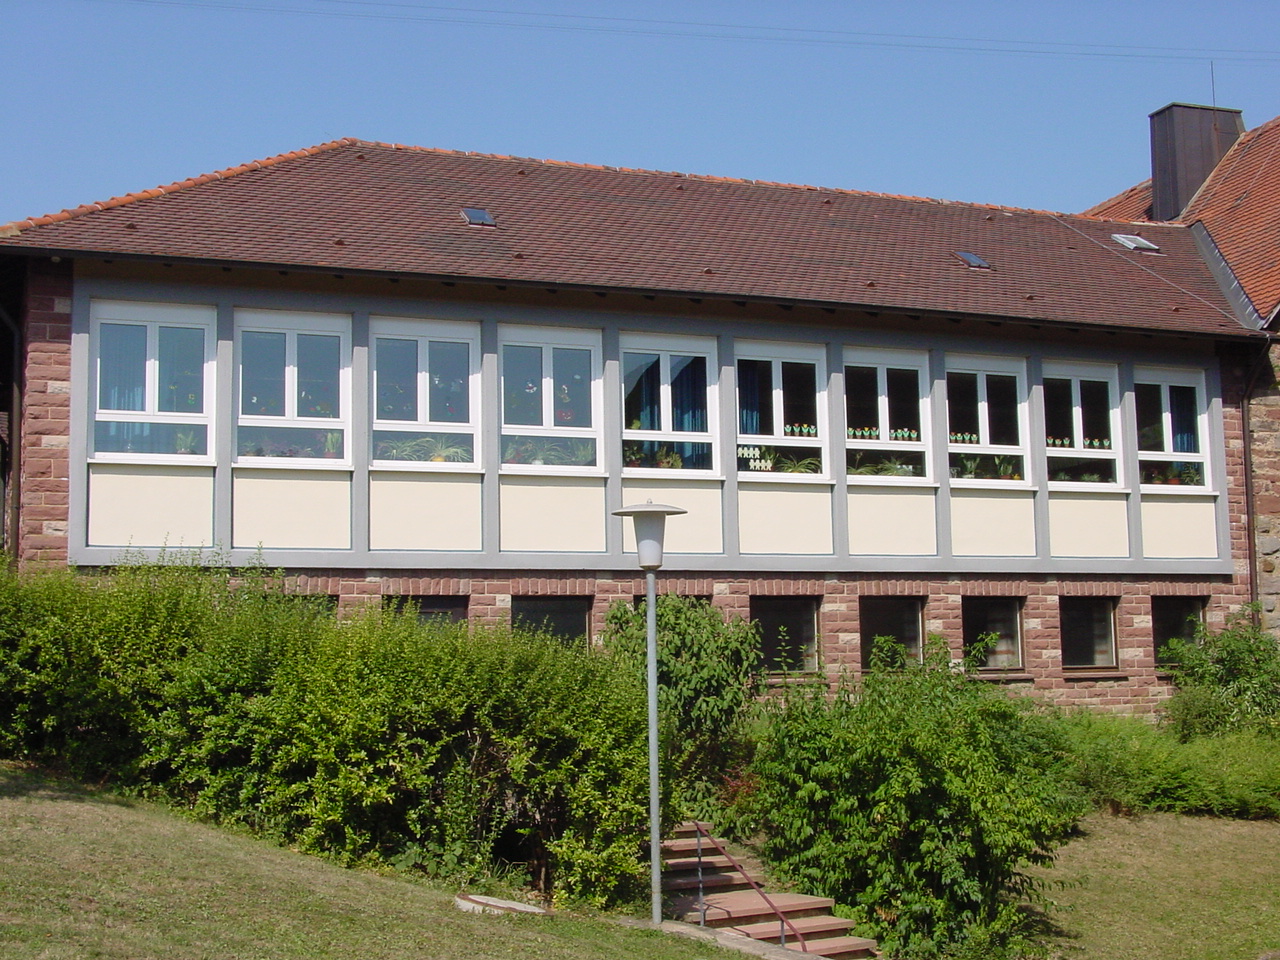  Grundschule Uissigheim 